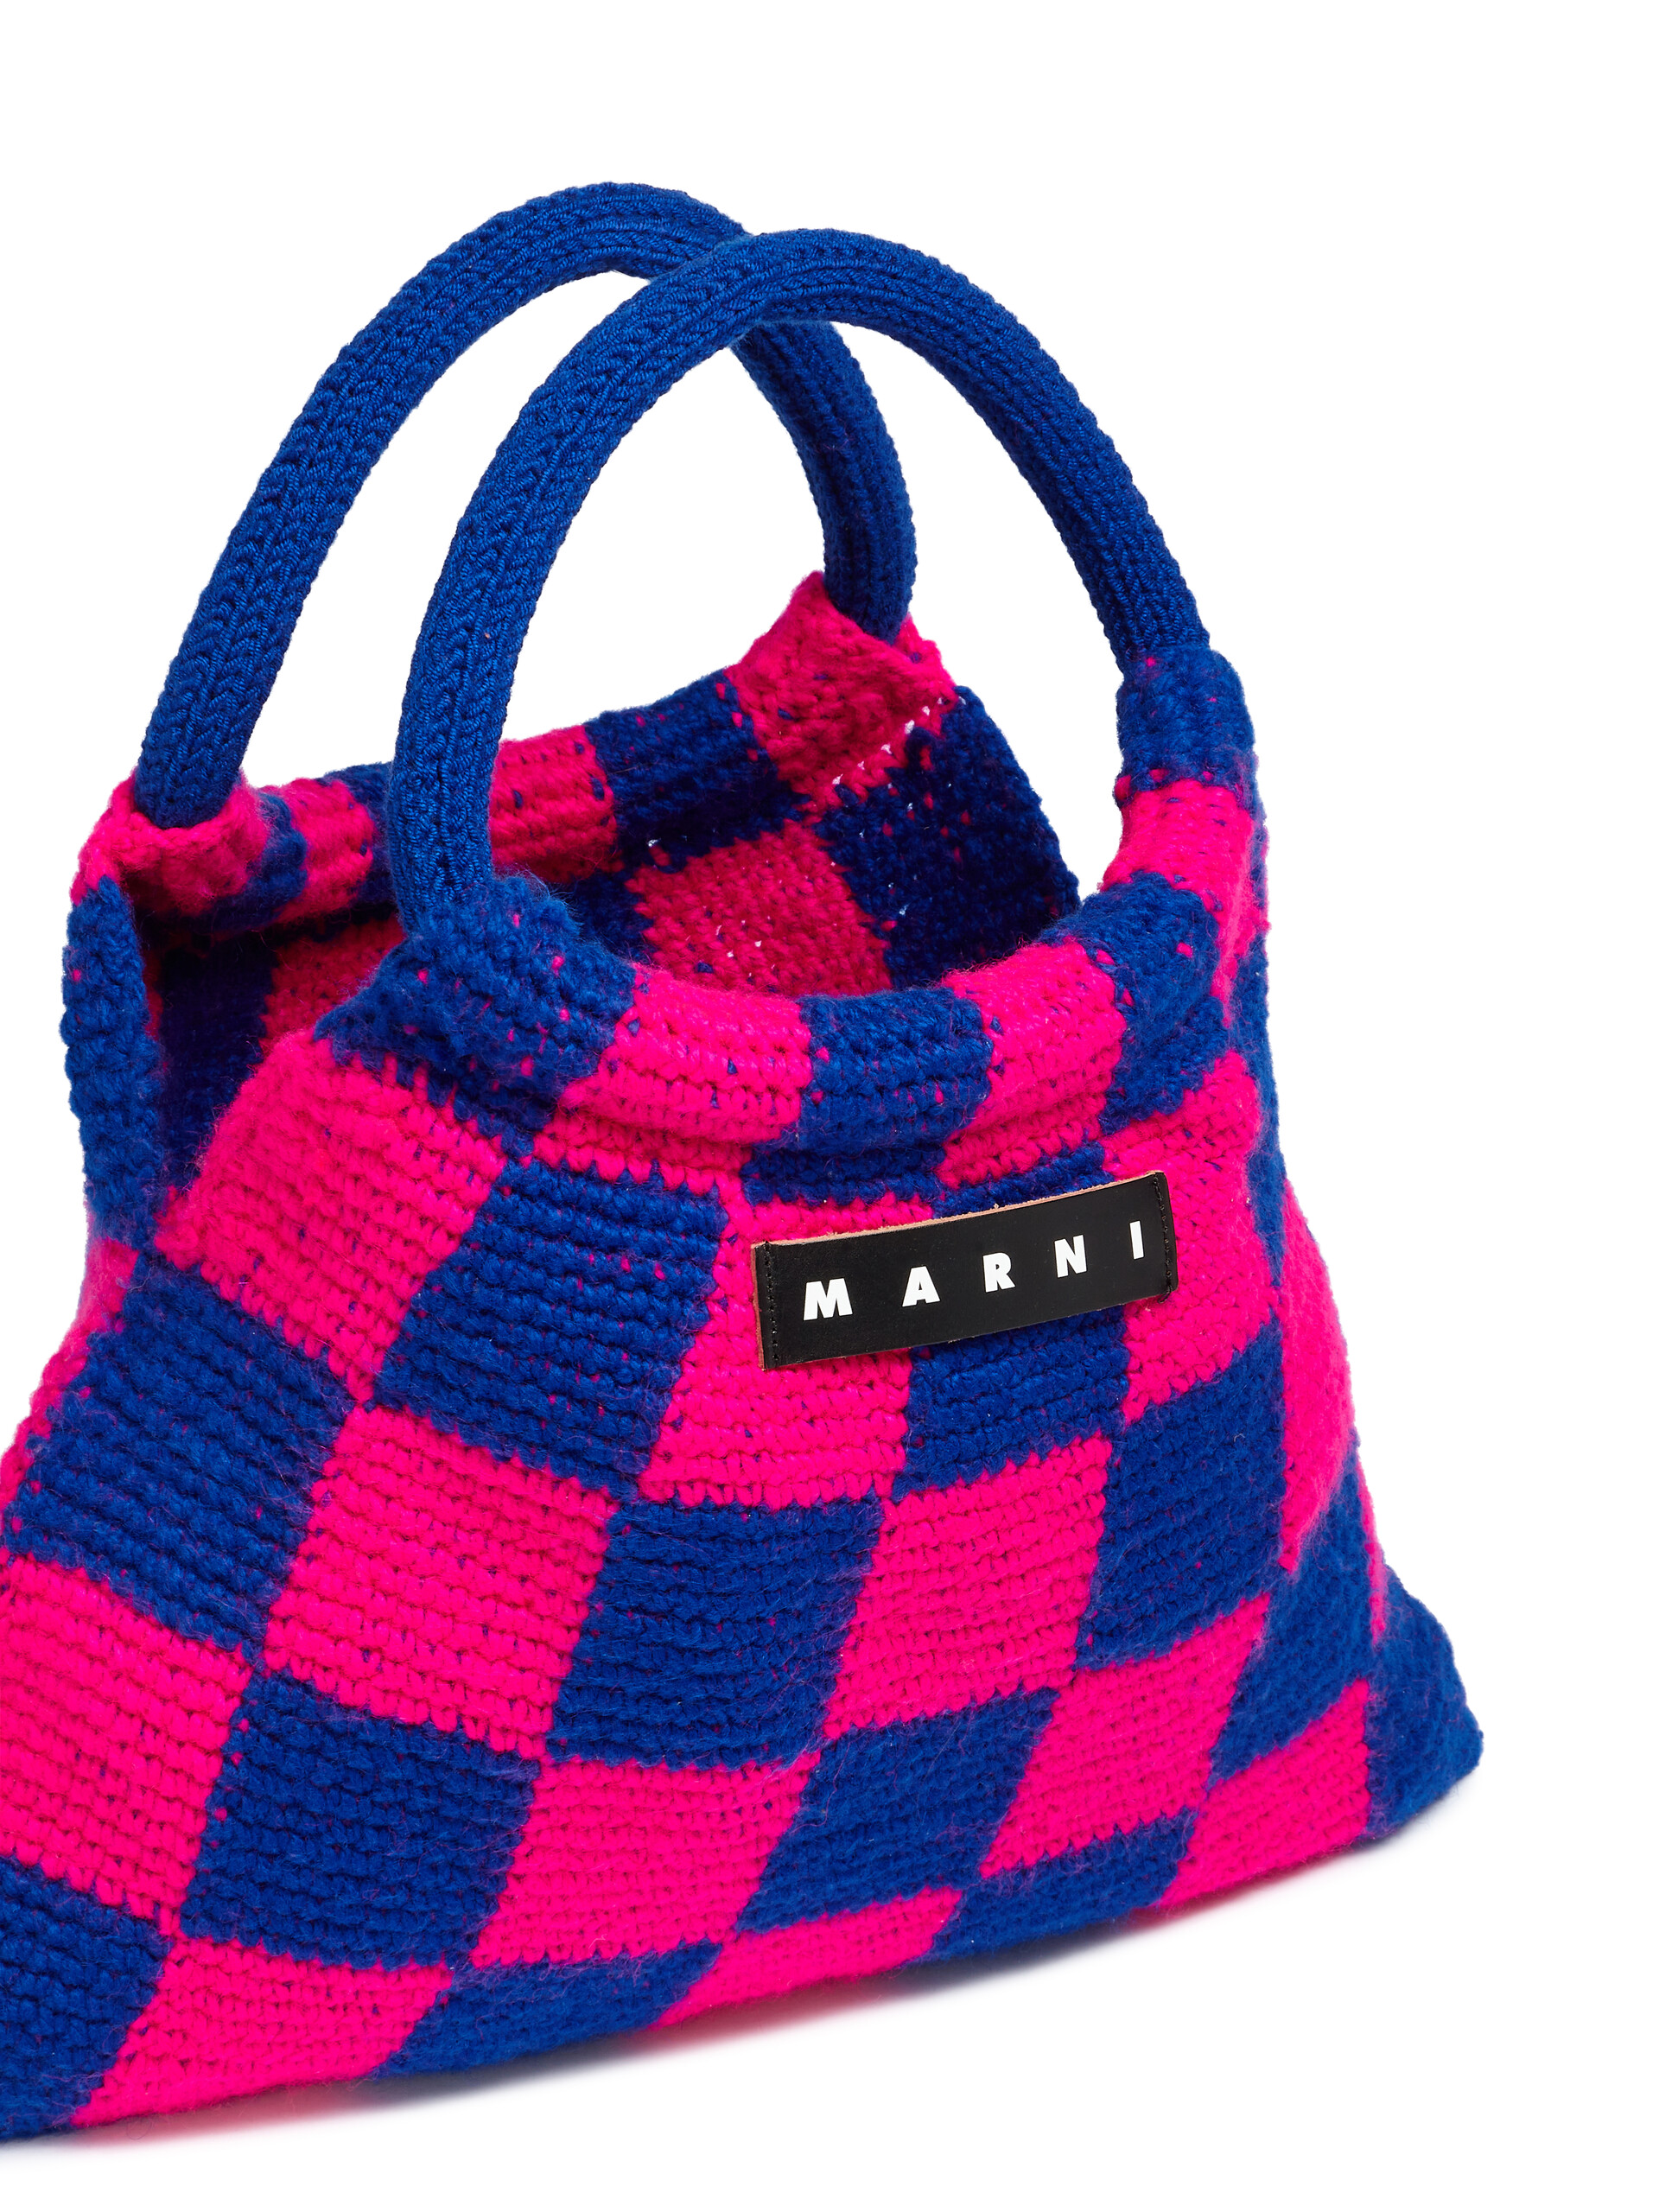 MARNI MARKET GRANNY Häkeltasche in Rosa und Blau - Shopper - Image 4